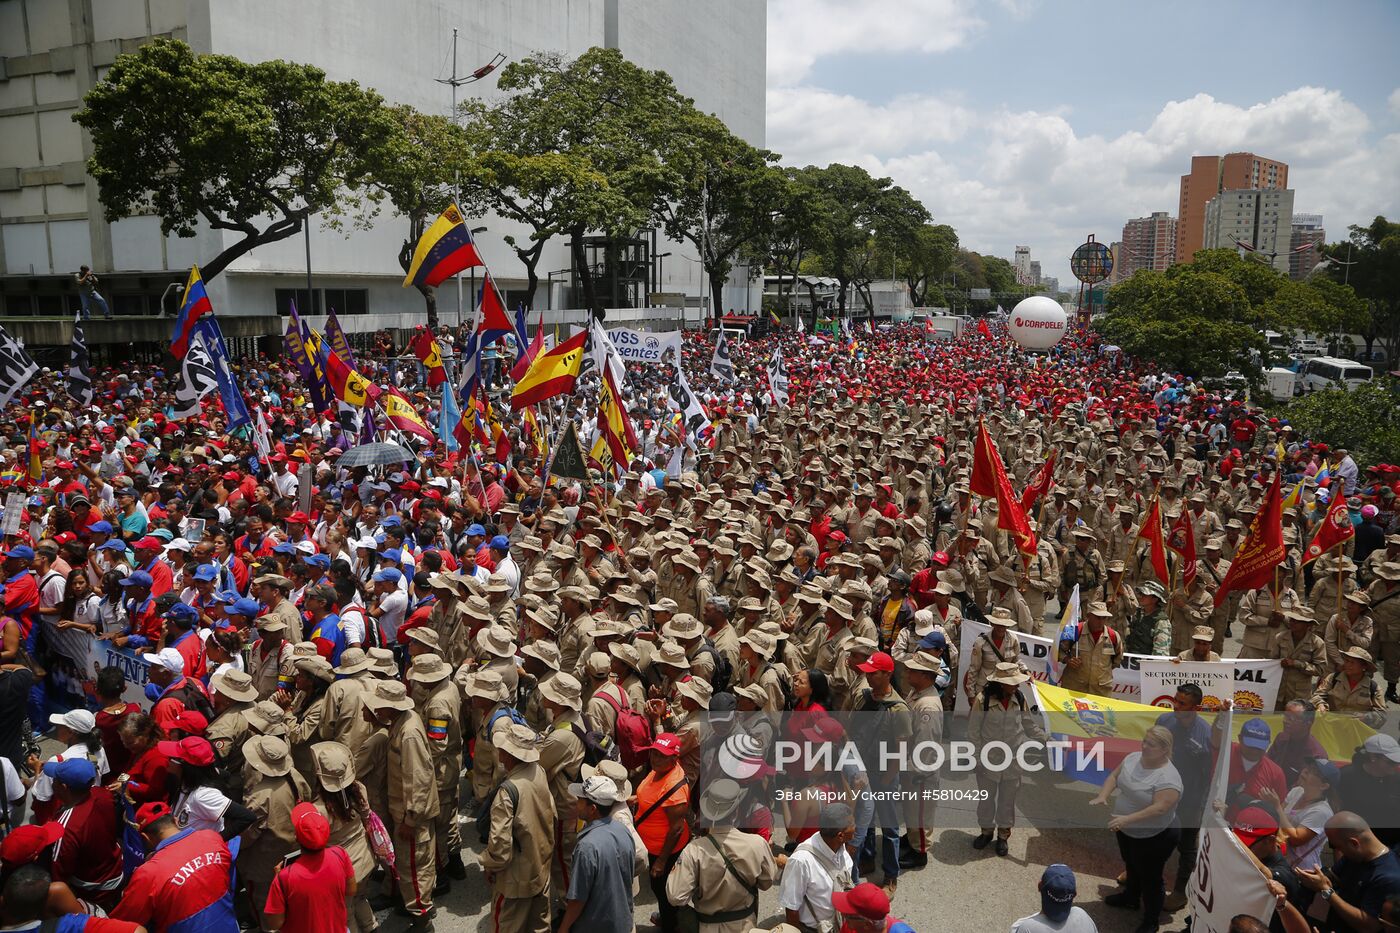 Акция в поддержку Н. Мадуро в Венесуэле